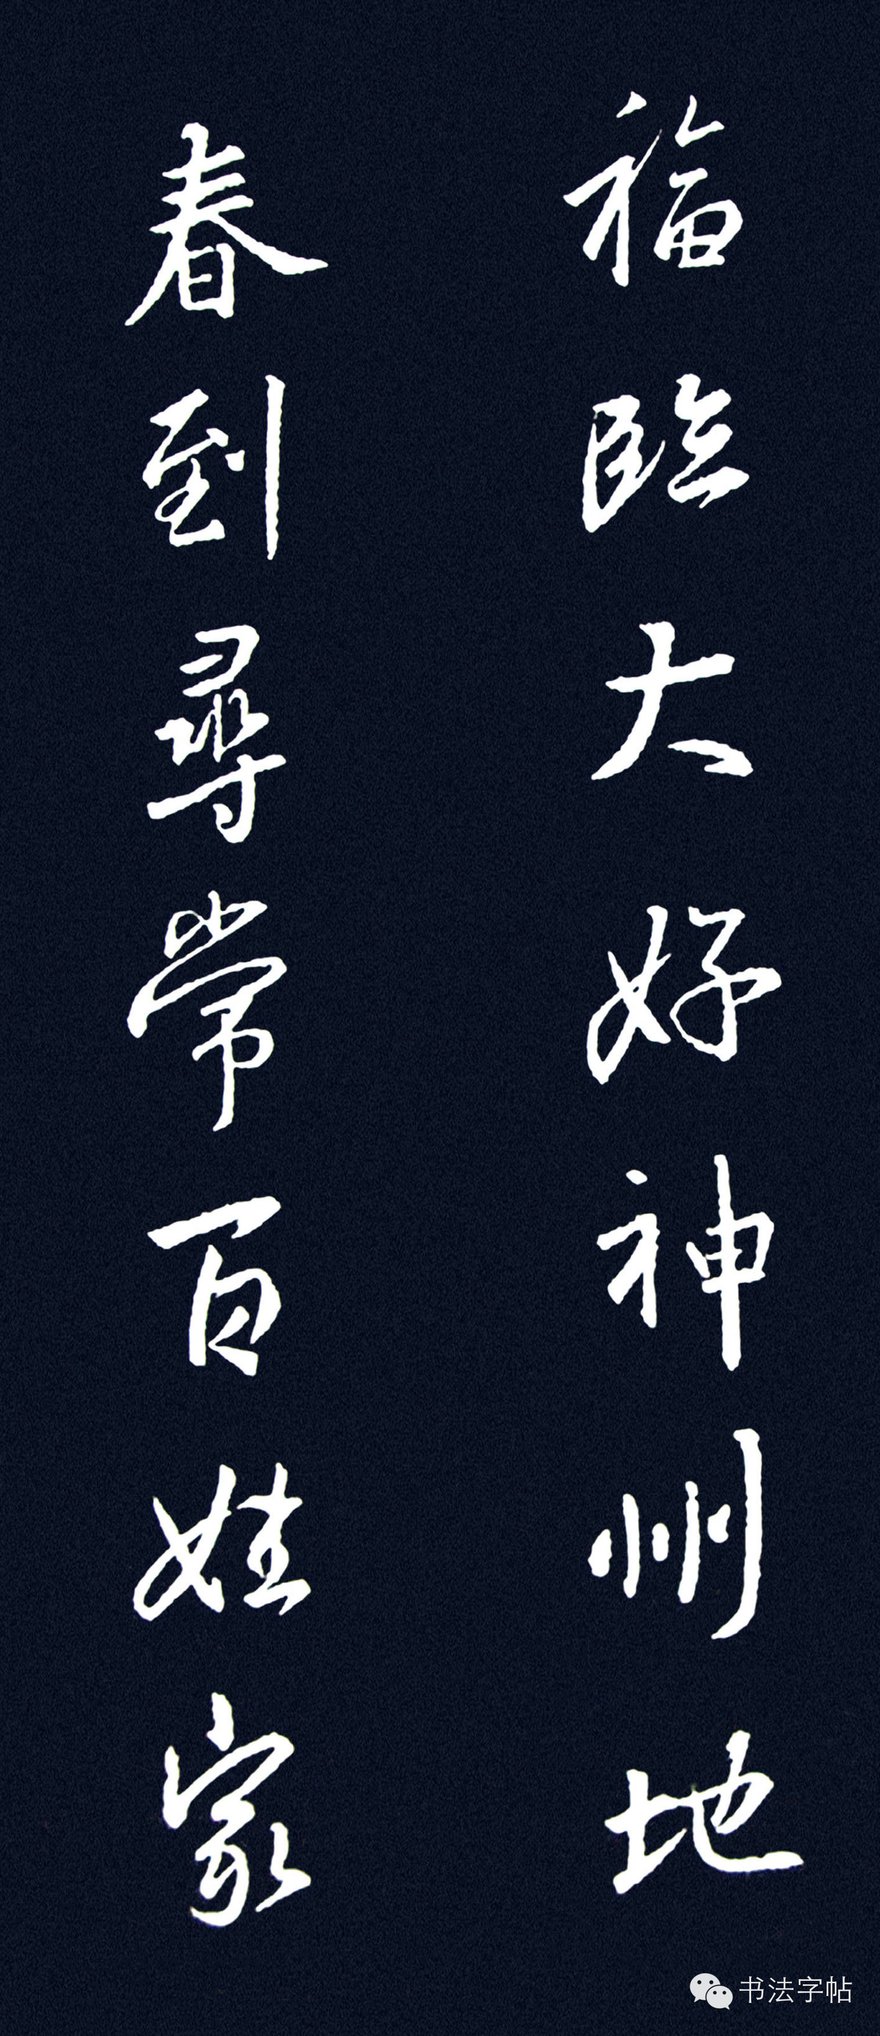 王羲之｜遒美健秀∥王羲之集字楹联欣赏| 自由微信| FreeWeChat